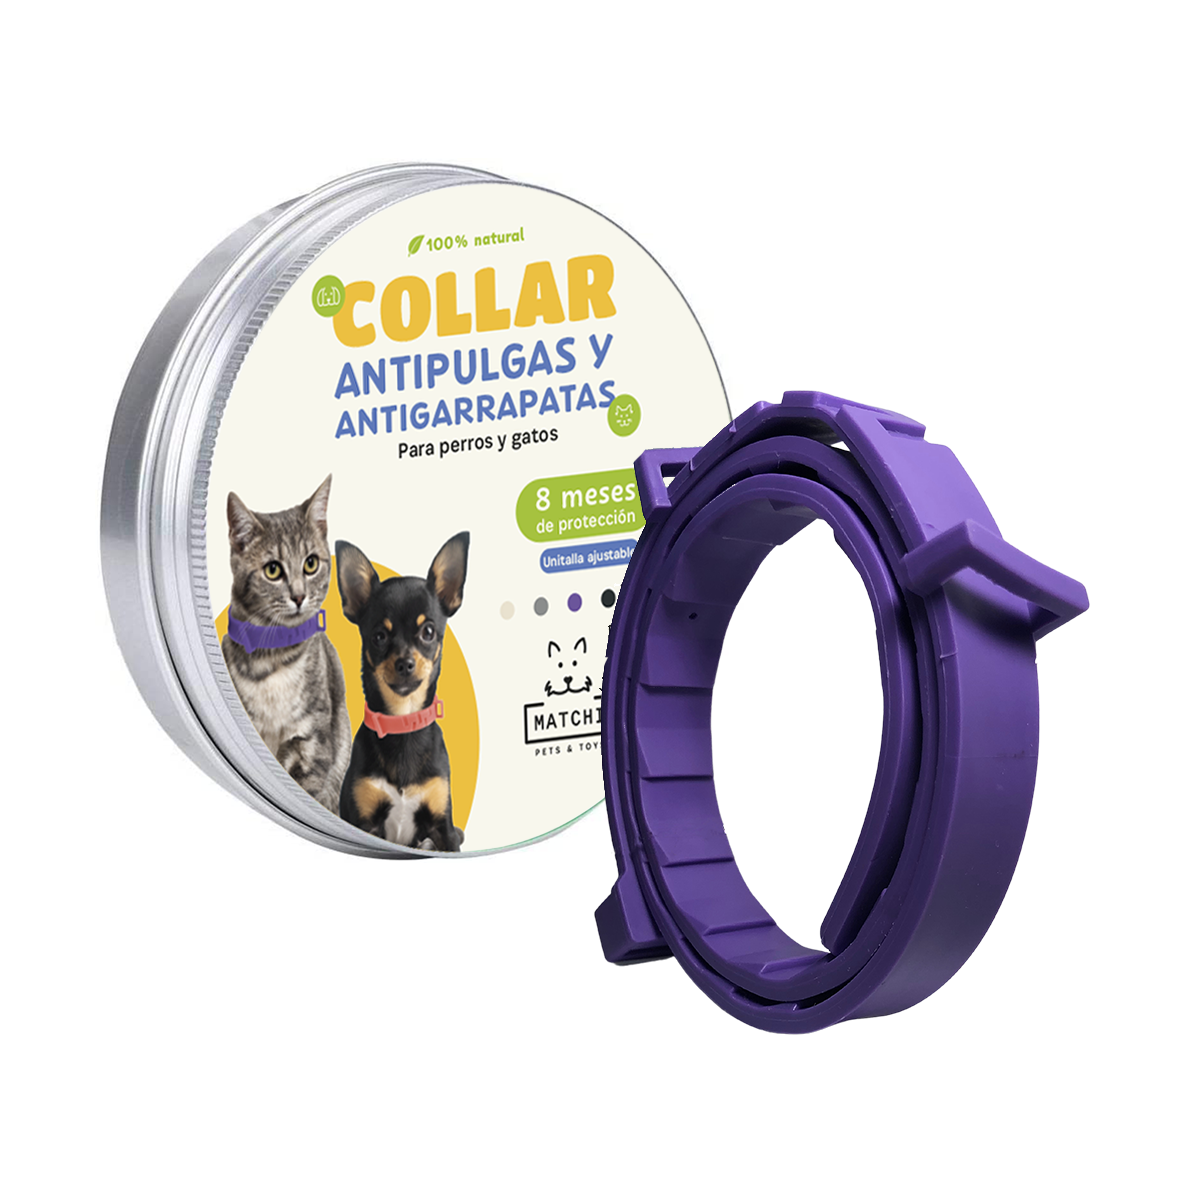 Collar Antipulgas Antigarrapatas para Perros y Gatos Duración 8 Meses